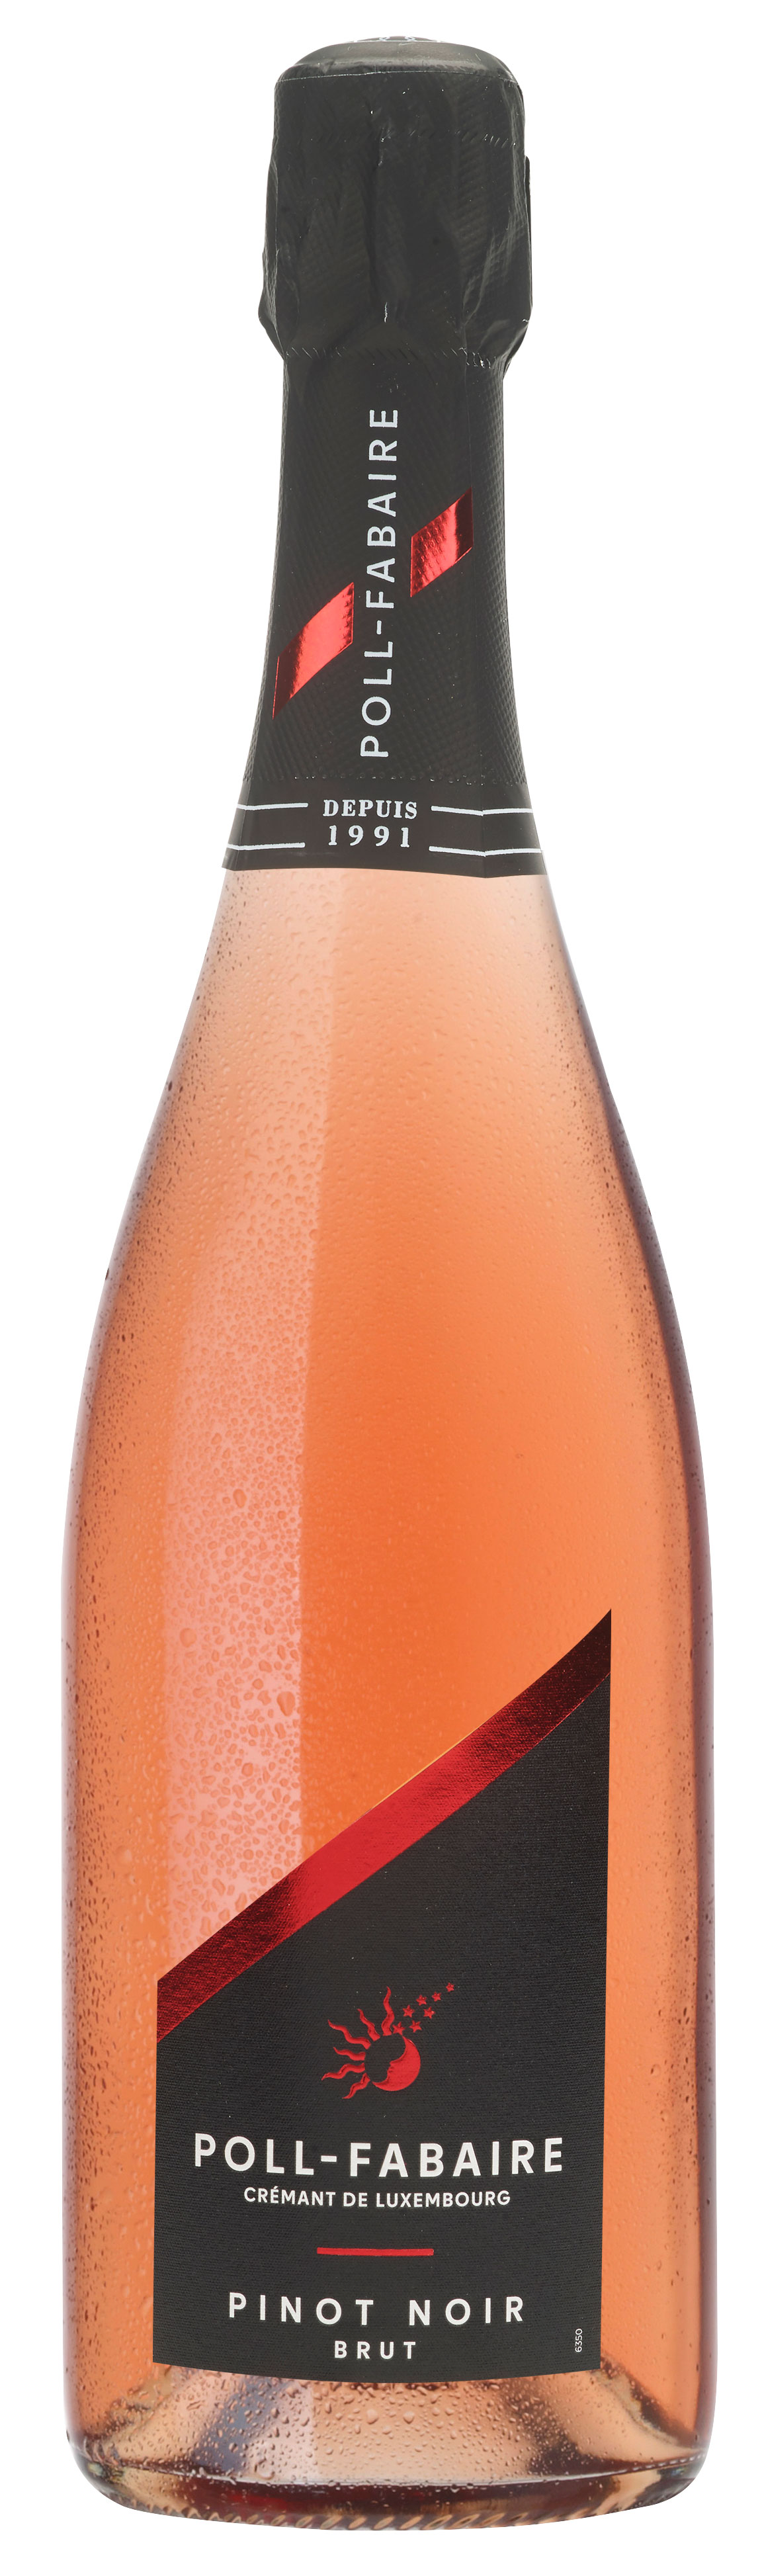 Crémant de Luxembourg - Poll Fabaire - Pinot Noir Rose, Brut